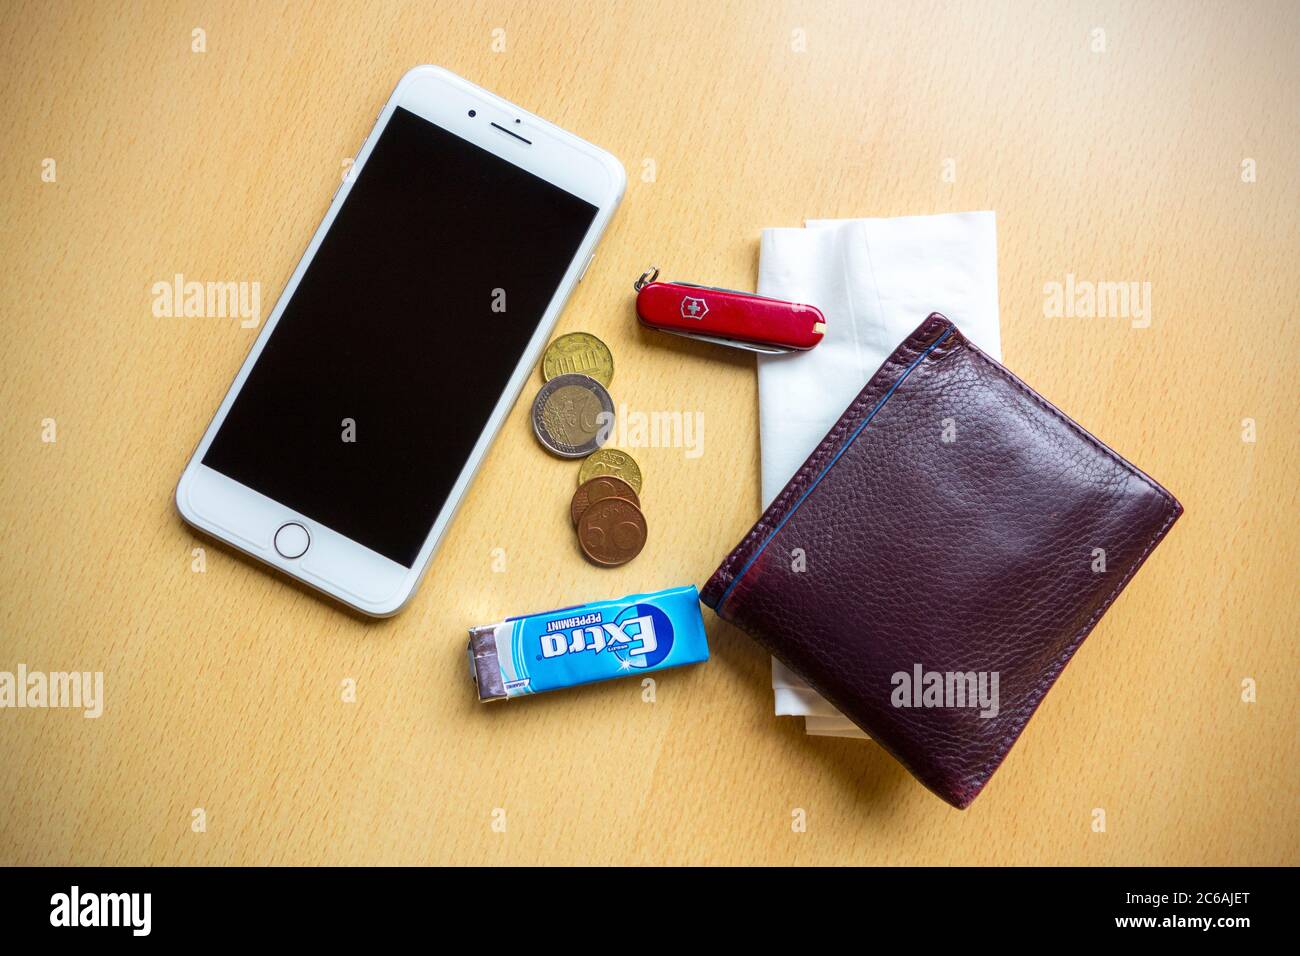 Typische Inhalte von Taschen, Geldbörse, Telefon, Taschentuch, Kaugummi, Taschenmesser und Münzen eines Mannes Stockfoto